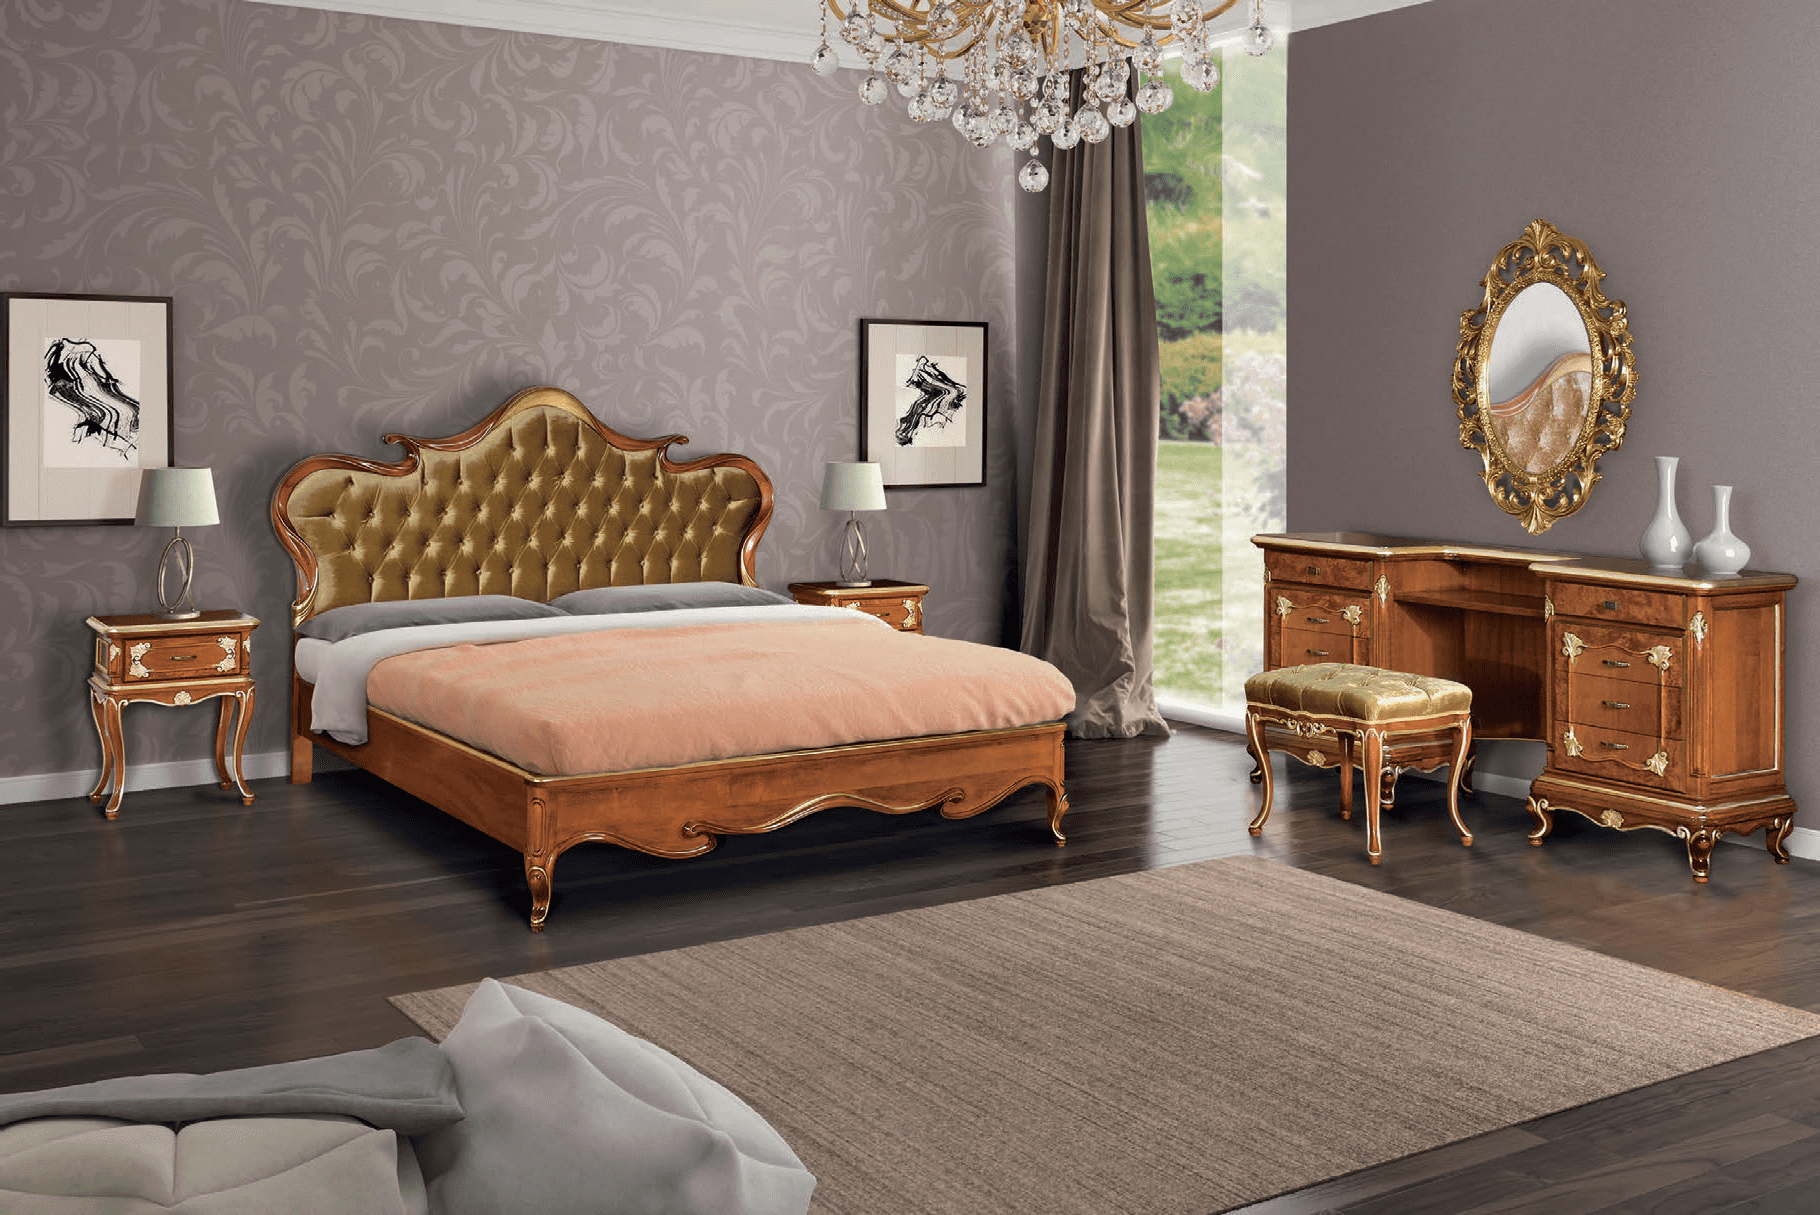 Комплект мебели для спальни из серии Art Deco из Италии